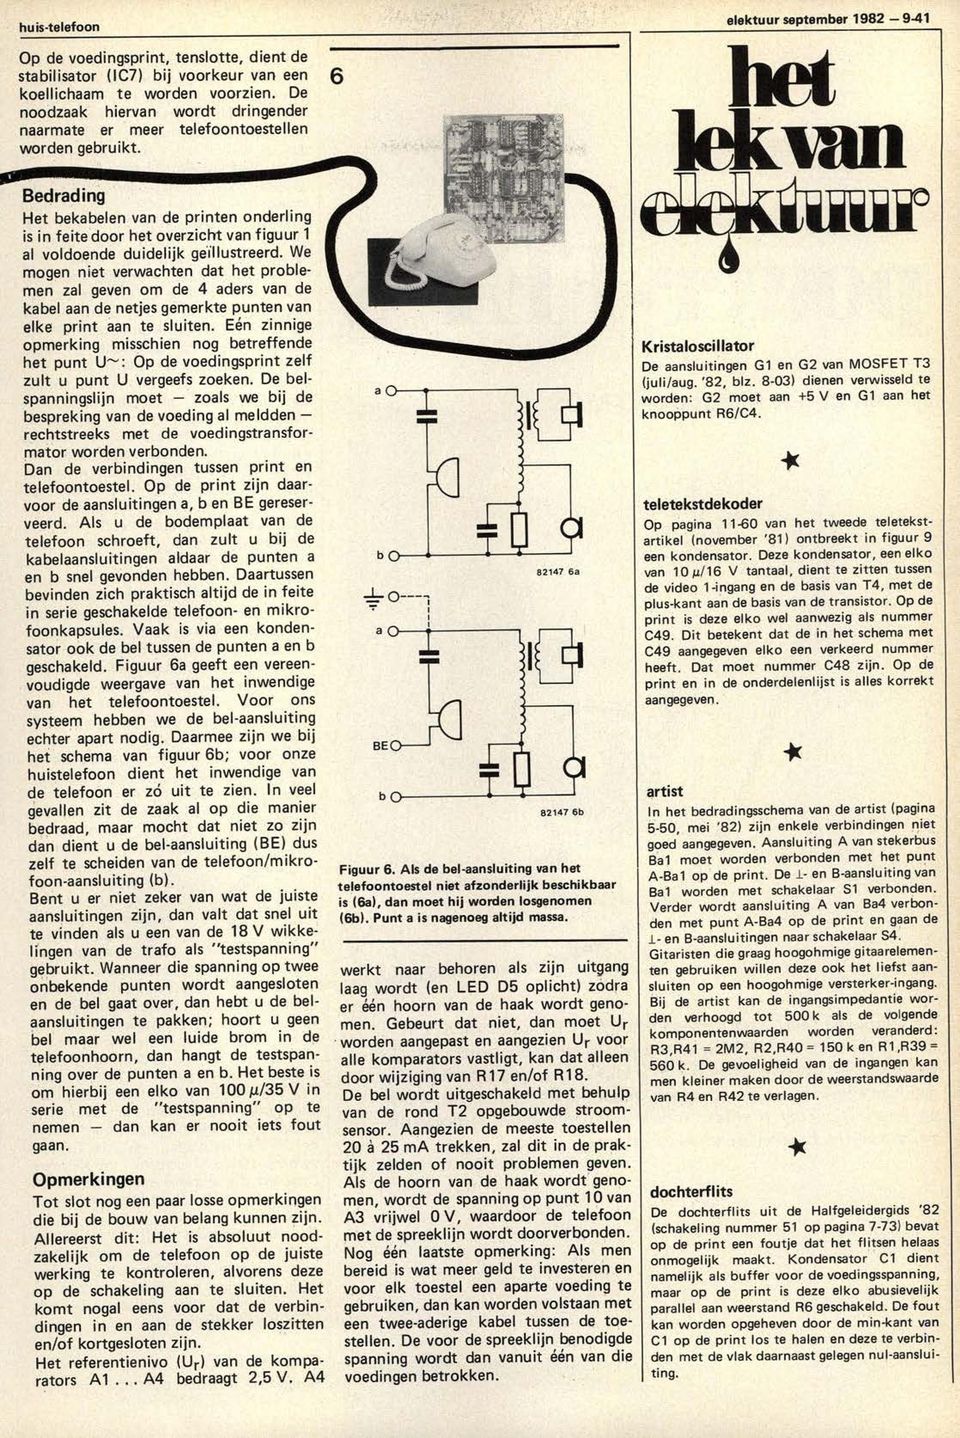 6 elektuur september 1982 9-41 liet lekwit Bedrading Het bekabelen van de printen onderling is in feite door het overzicht van figuur 1 al voldoende duidelijk geillustreerd.